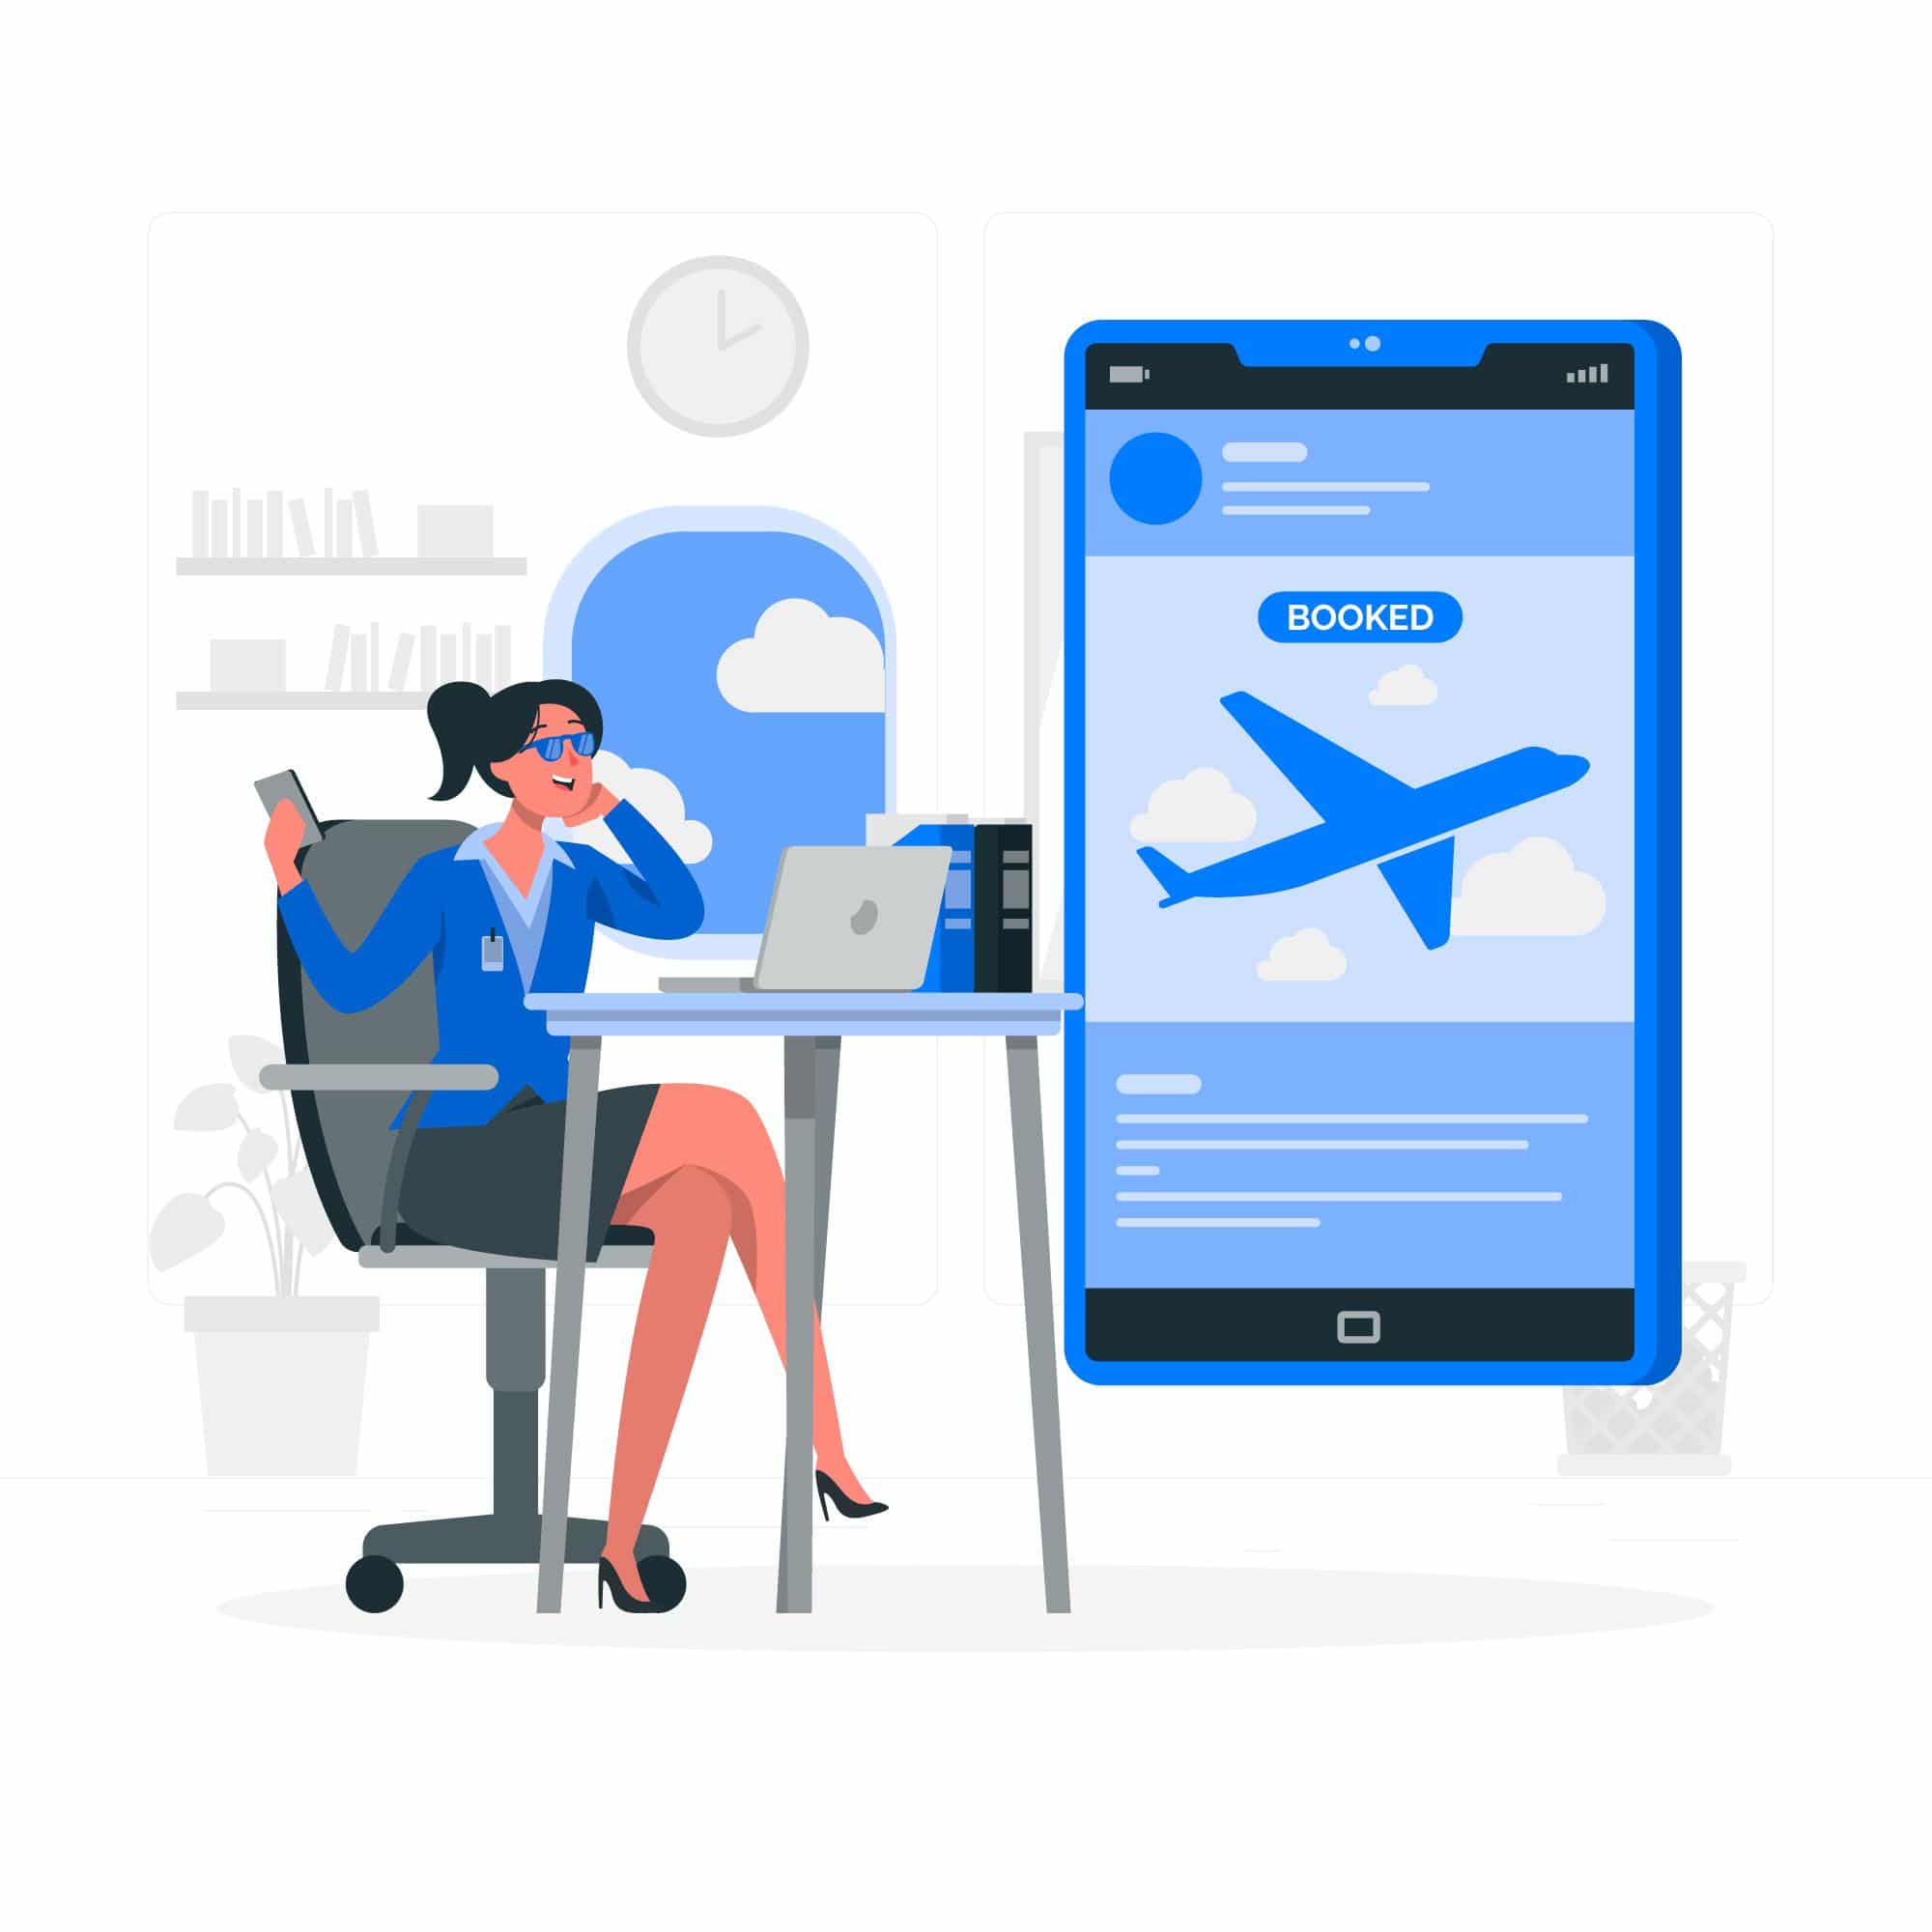 Thiết kế app vé máy bay tiện lợi cho mọi du khách trong năm 2020